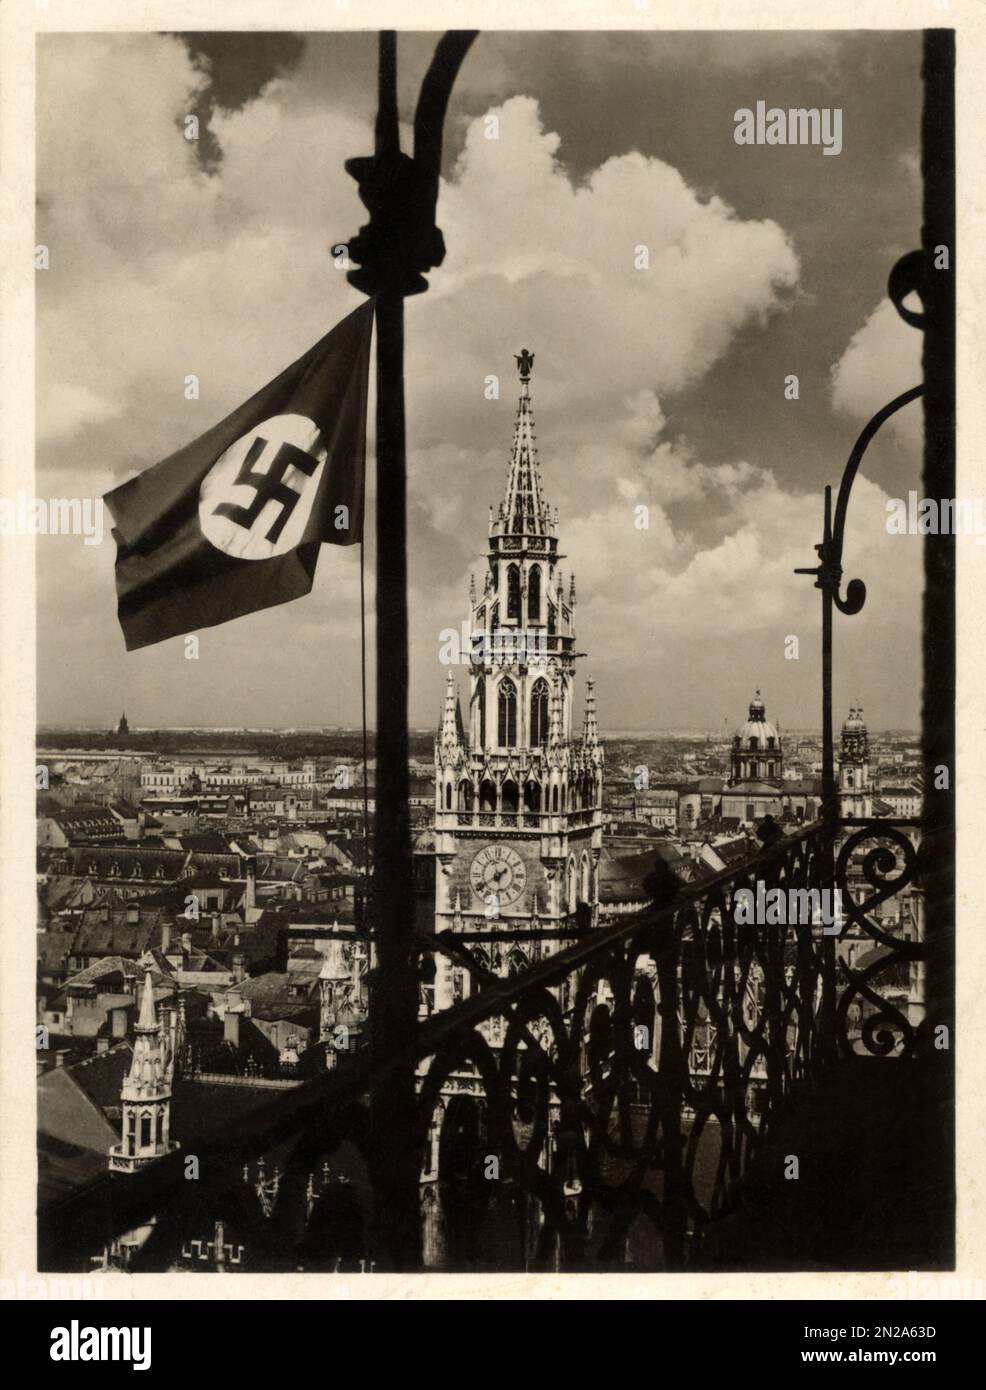 MÜNCHEN , Bayern , DEUTSCHLAND , 1933 : die nazistische Hakenkreuz-Fahne des deutschen Führers Diktator ADOLF HITLER ( 1889 - 1945 ). Blick auf die Stadt von St. Peterskirche . Unbekannter Fotograf. - GESCHICHTE - FOTO STORICHE - MONACO DI BAVIERA - BANDIERA - SVASTICA - ZWEITER WELTKRIEG - NAZI - NAZIST - NAZISMUS - NAZISTA - NAZISMO - SECONDA GUERRA MONDIALE - WW2 - ZWEITER WELTKRIEG - CHIESA - PANORAMA - AUSSICHT - ARCHITETTURA - ARCHITEKTUR - ARCHIVIO GBB Stockfoto